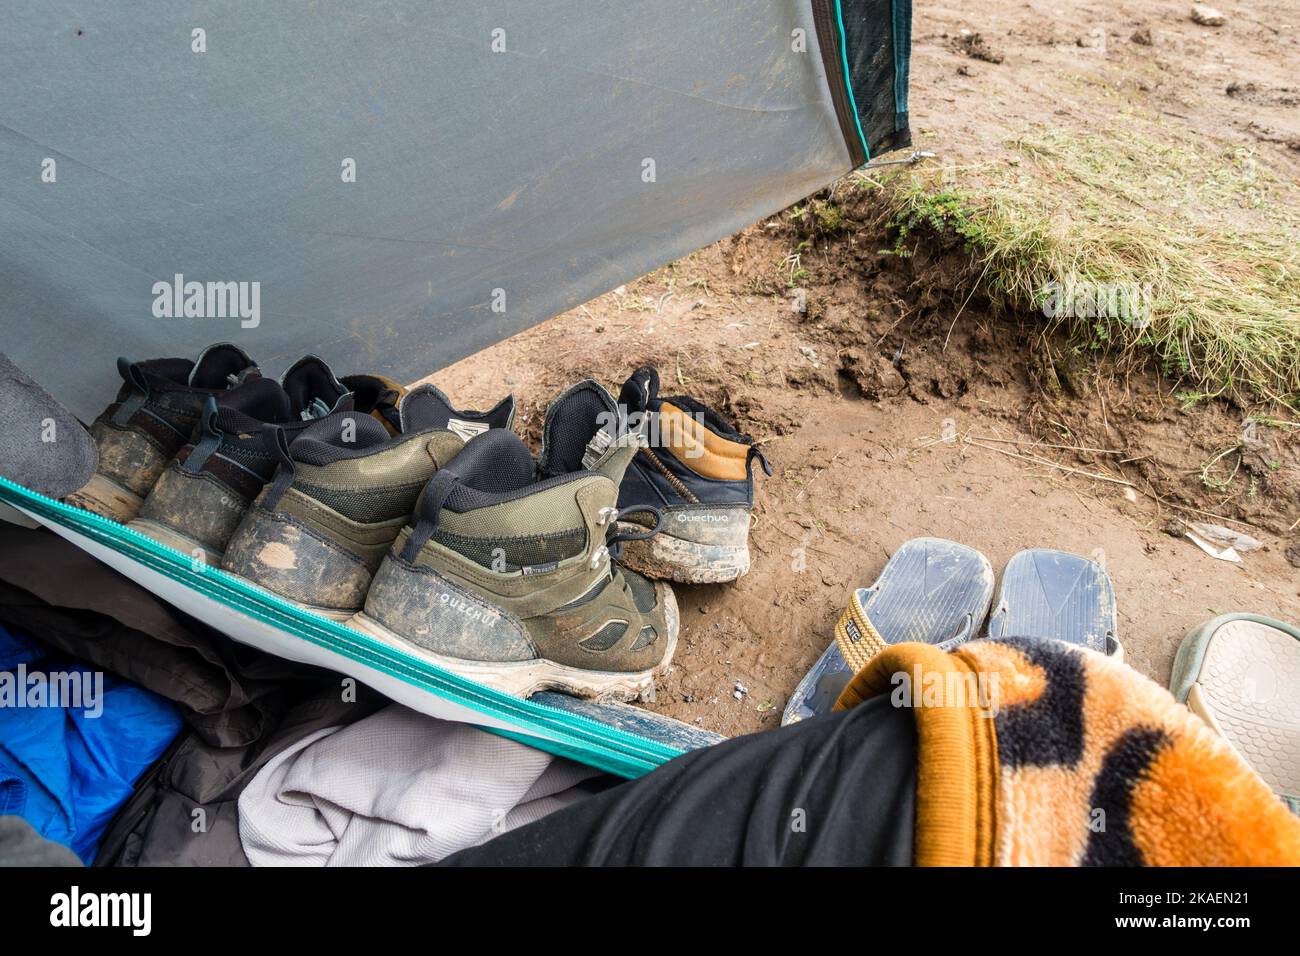 14 juillet 2022, Himachal Pradesh Inde. Paire de chaussures de randonnée chaussettes à l'extérieur d'une tente de camping après une longue journée de randonnée. Banque D'Images